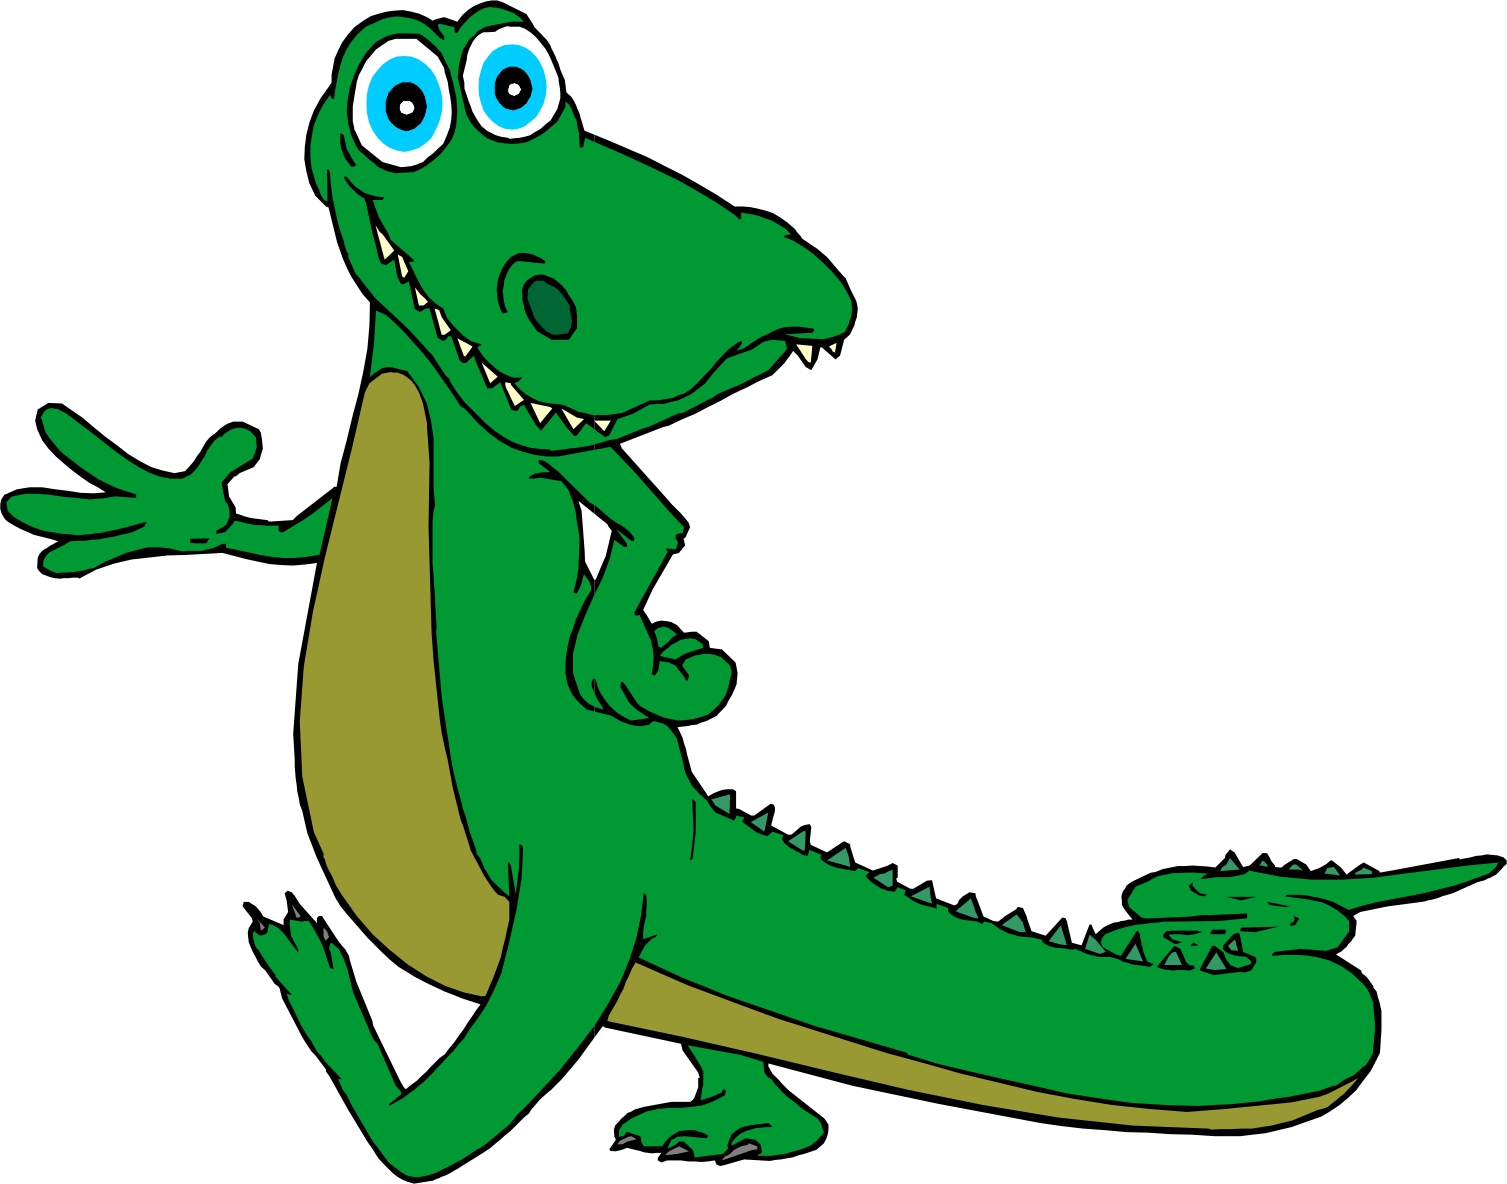 Funny alligator clip art crocodile pictures 2 3